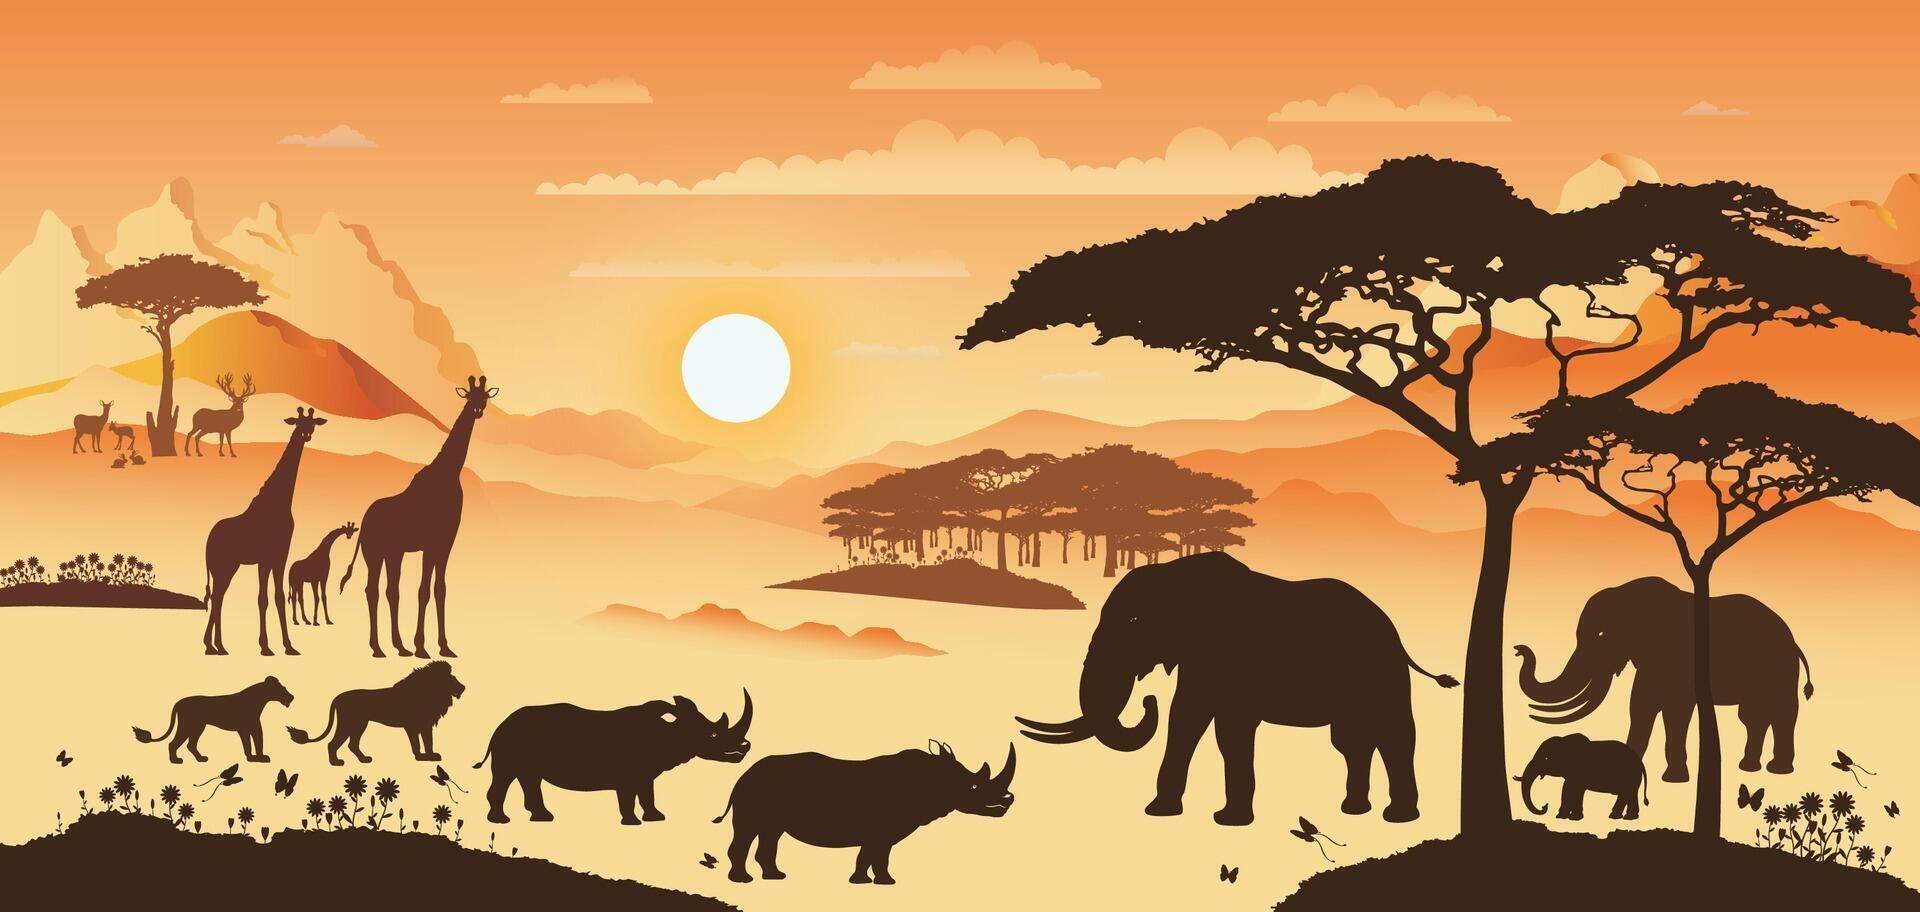 Afrikaanse illustratie landschap met silhouetten van dier dieren in het wild Bij zonsondergang of zonsondergang. vector